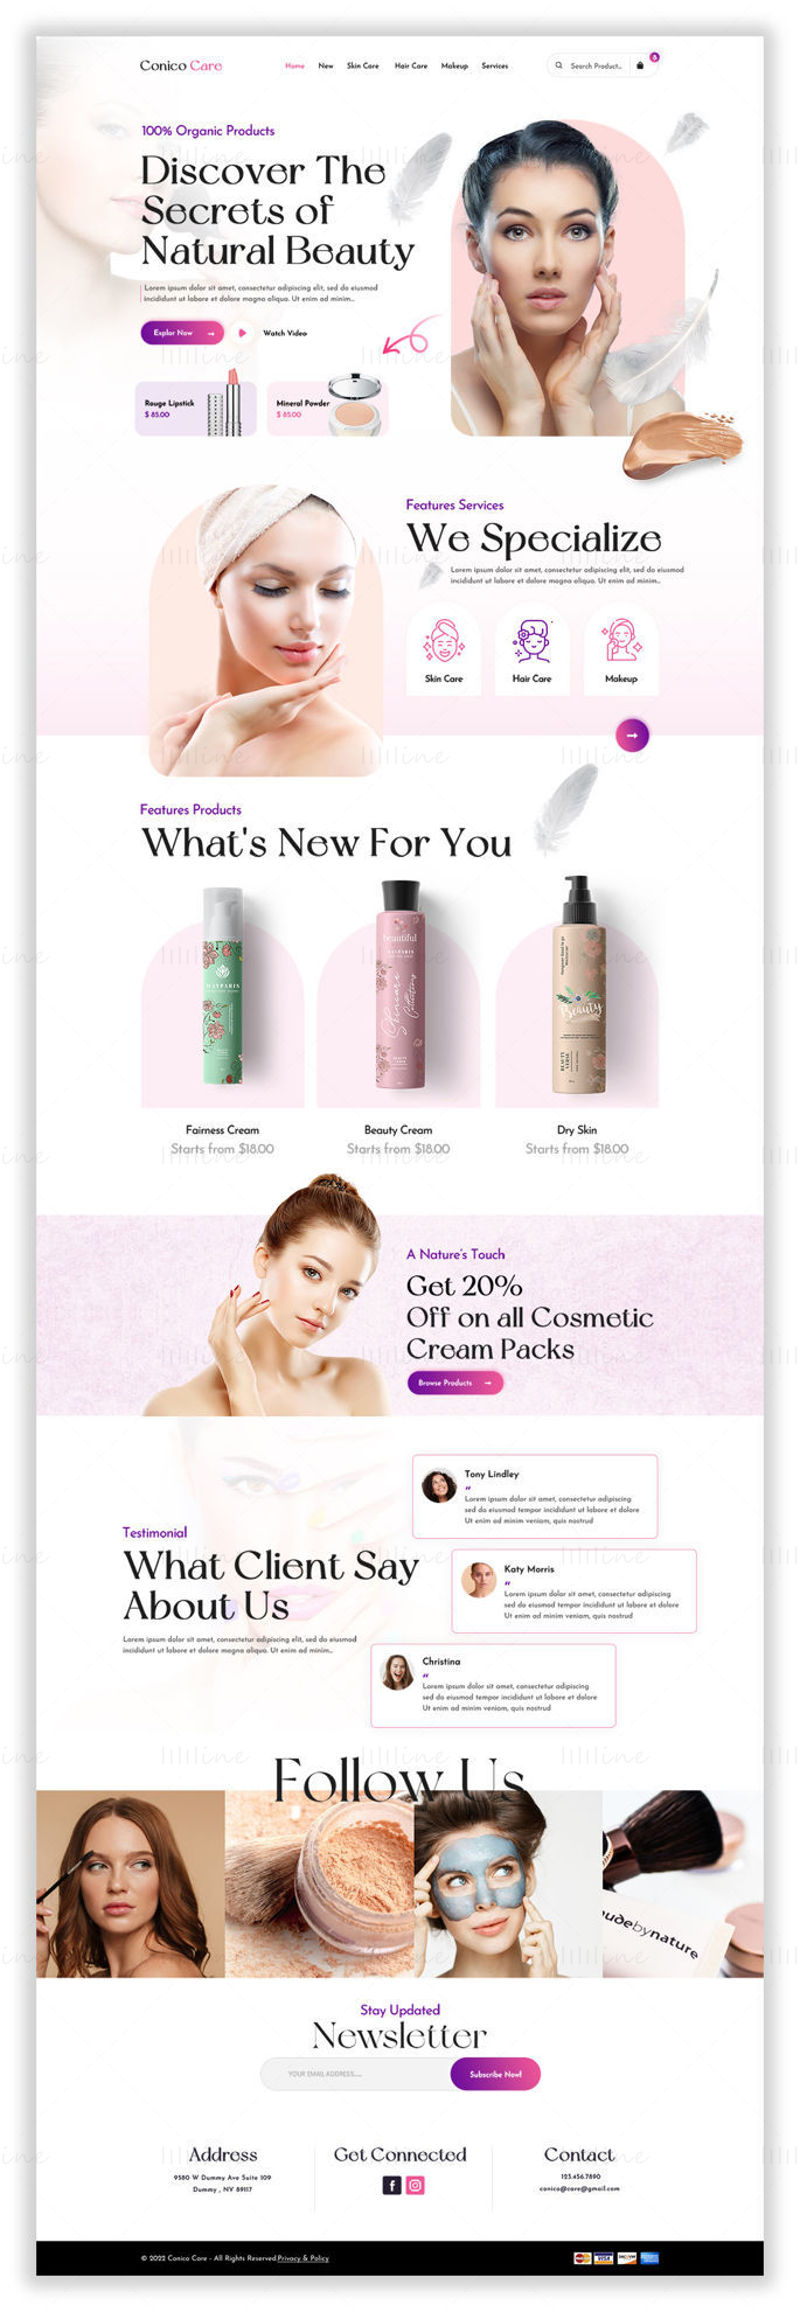 Conico-Care Kozmetik ve Cilt Bakımı Ana Sayfası - UI Adobe Photoshop